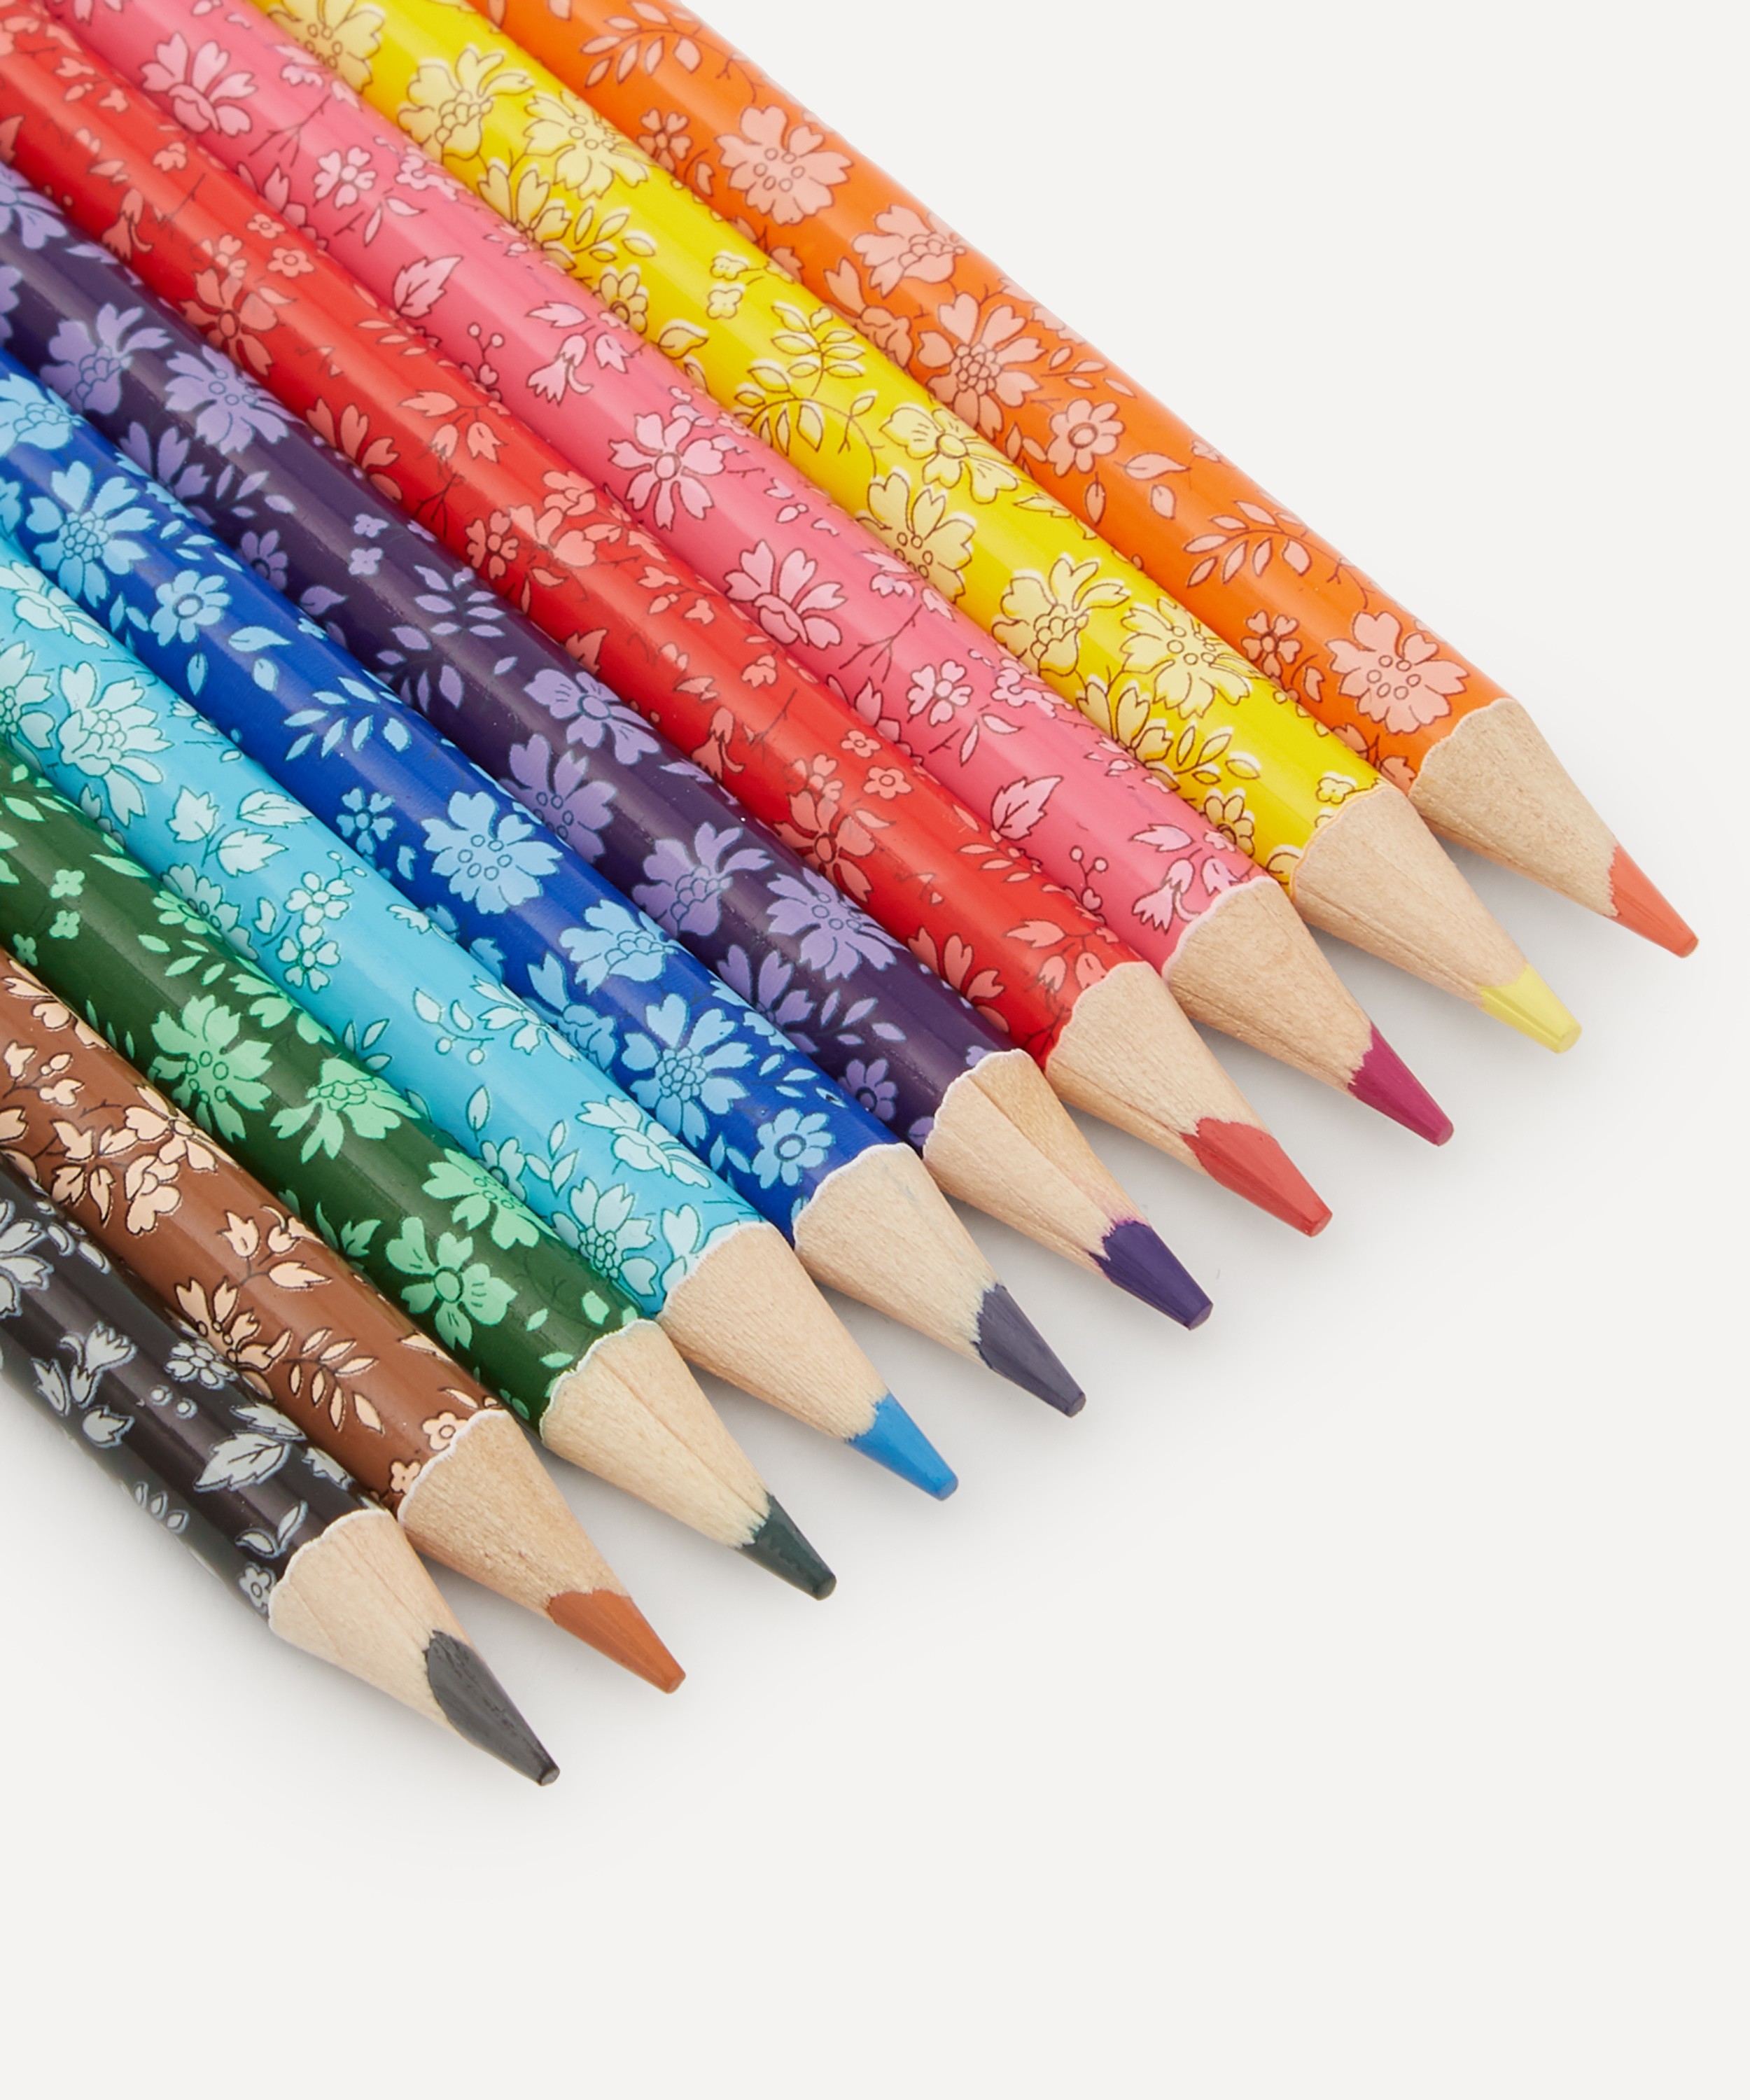 Liberty Capel Colored Pencil Set